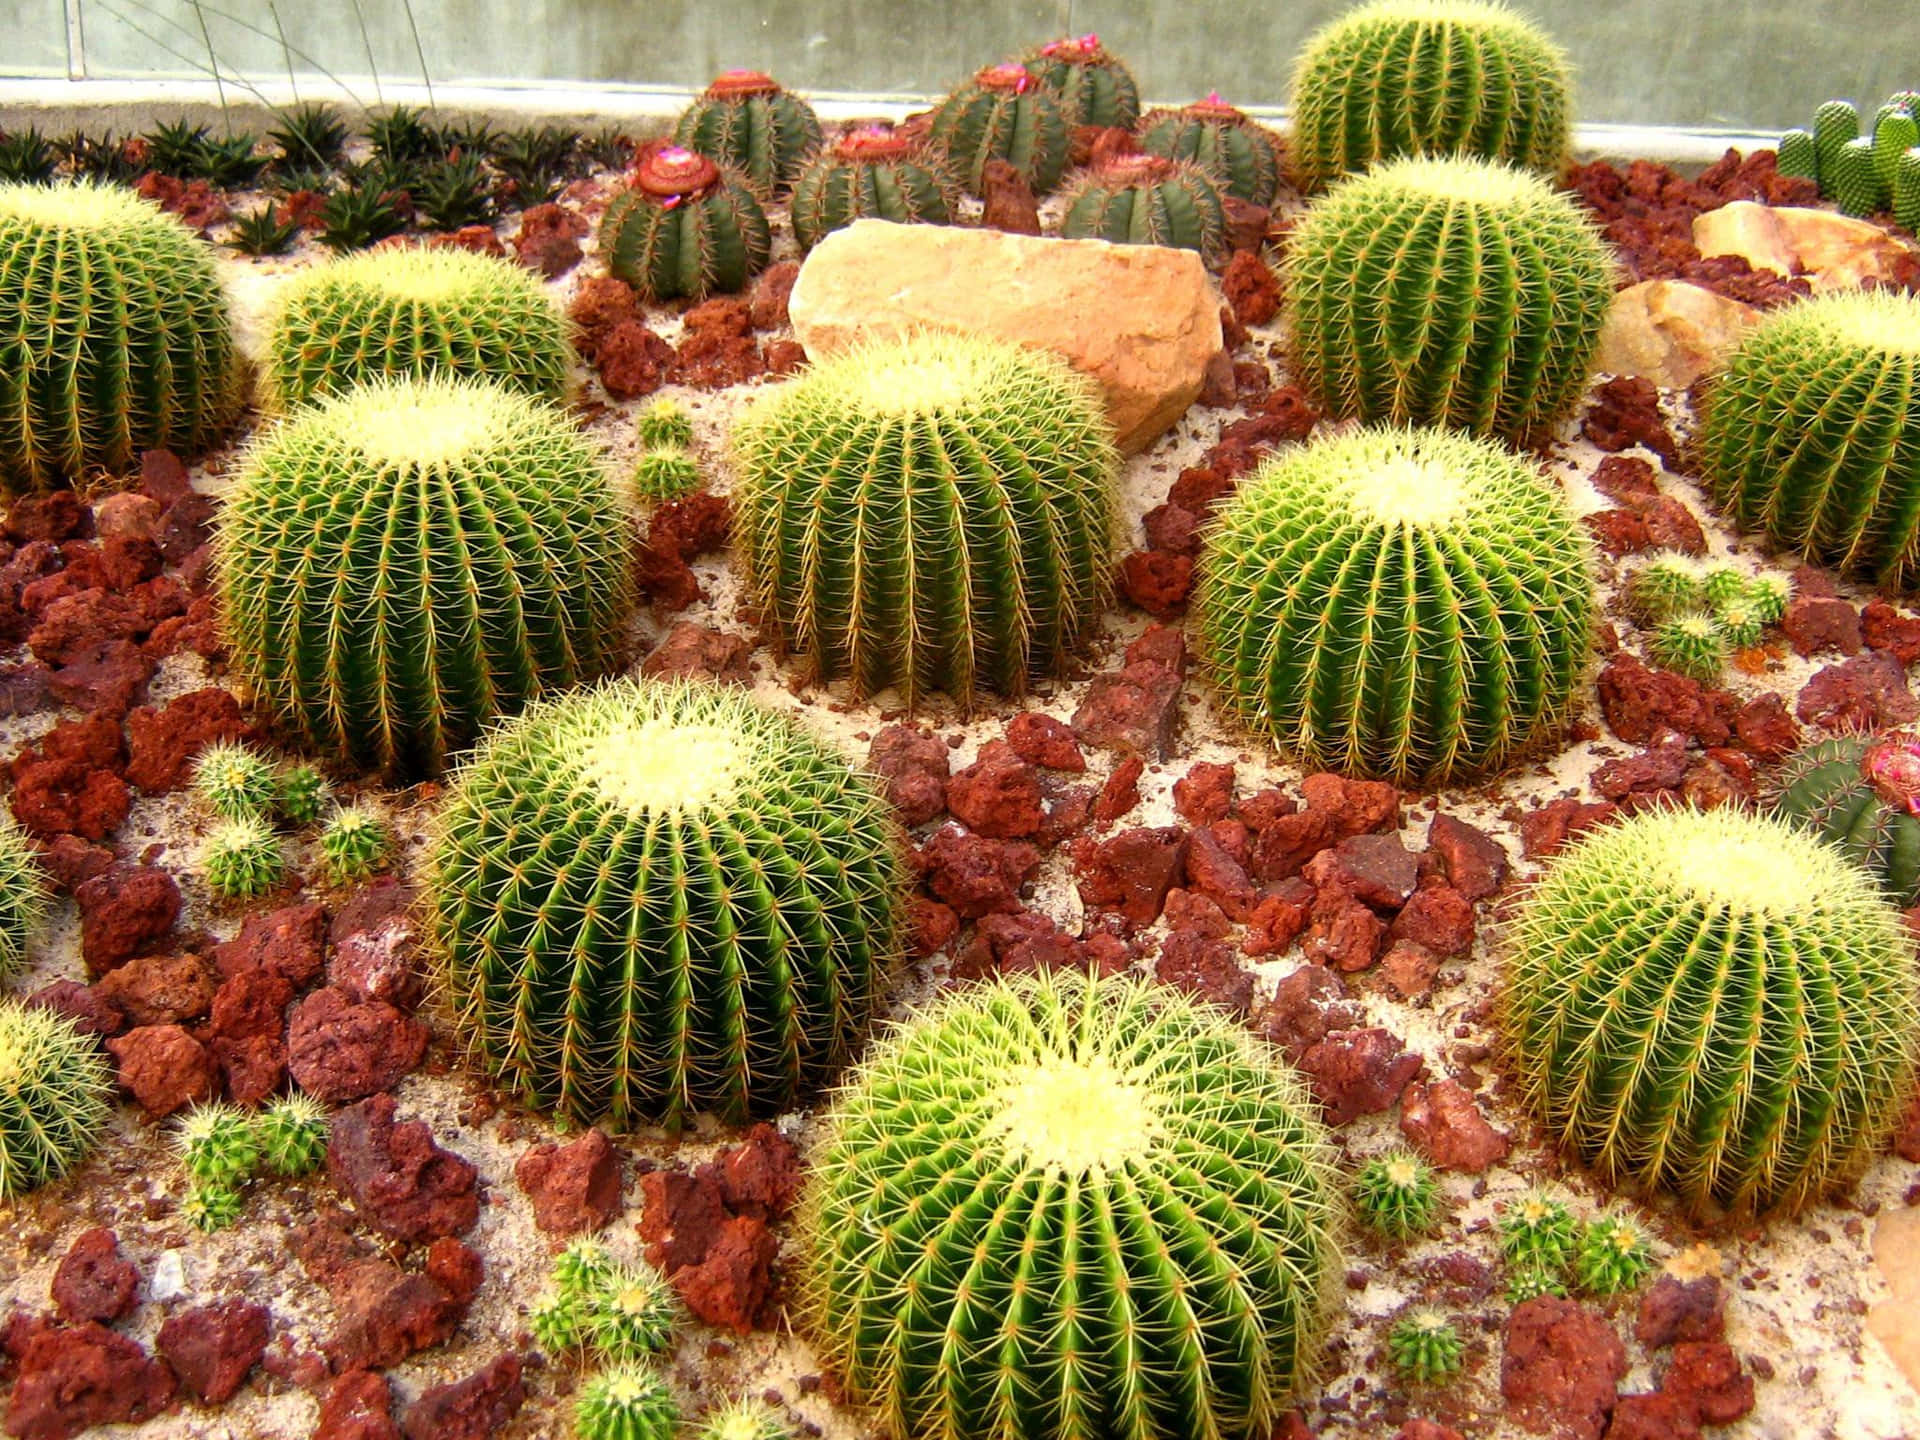 Imagenlinda De Un Cactus De Barril Dorado.